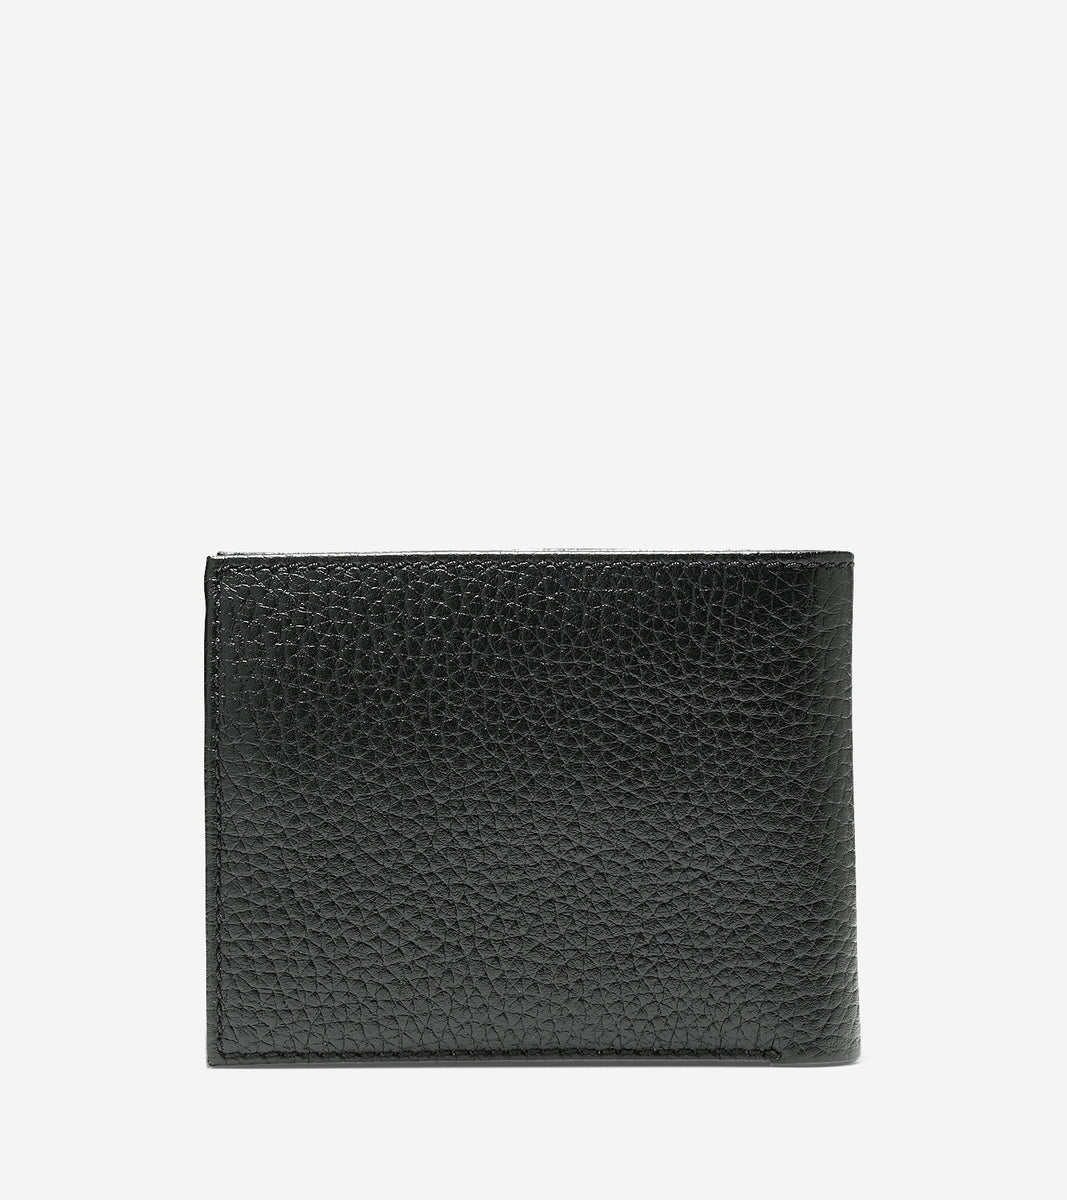 ColeHaan-Wayland Billfold With Passcase Wallet-f10093-Black